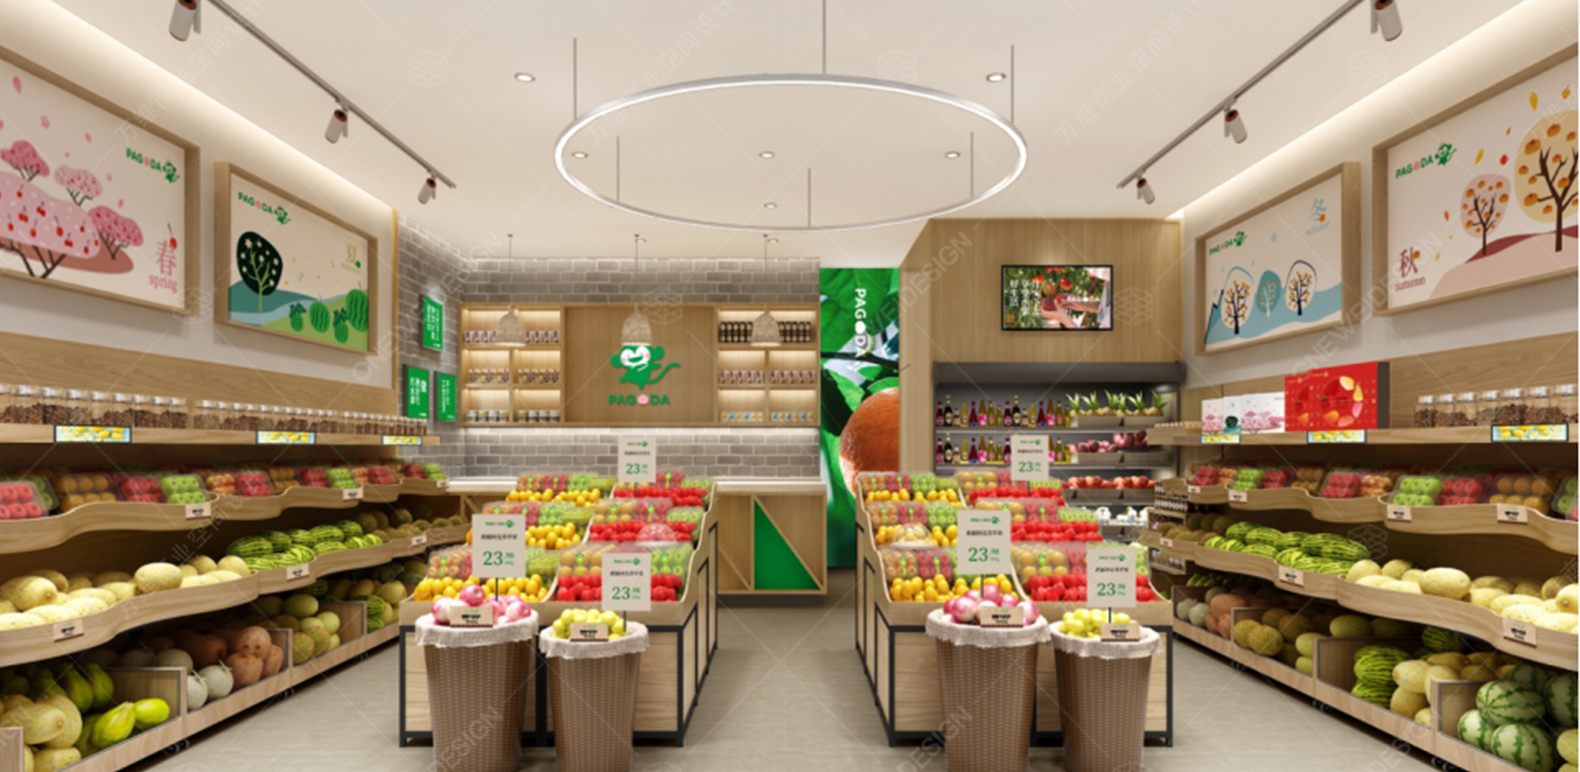 百果园：2020年要开到10000家店 让更多中国人吃到全球优质水果 | 国际果蔬报道